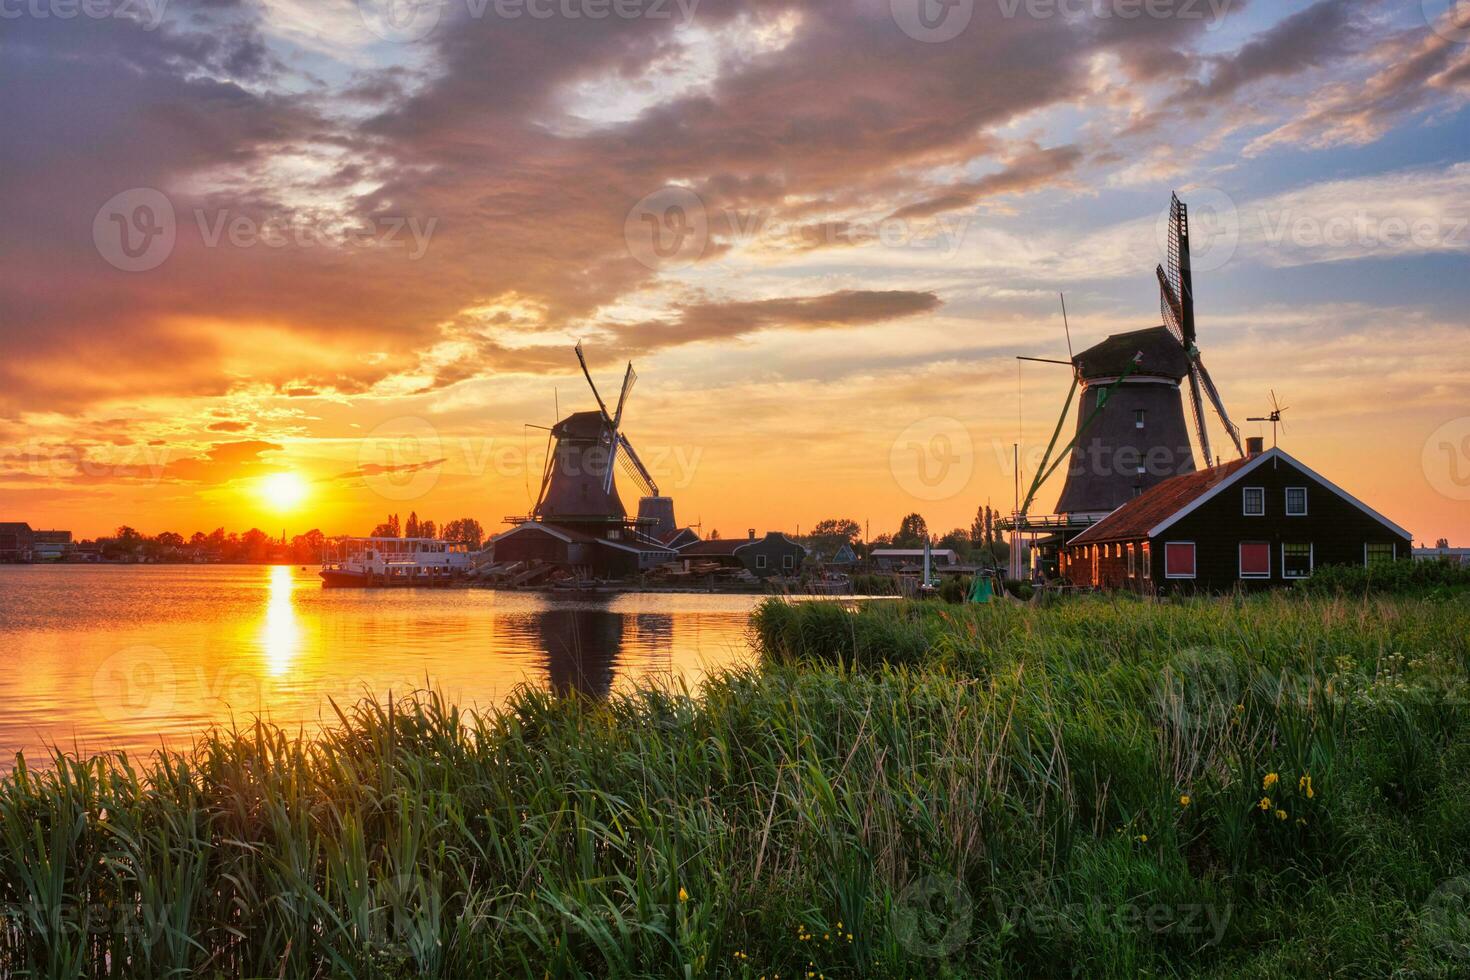 väderkvarnar på zaanse schans i holland på solnedgång. Zaandam, nedre foto